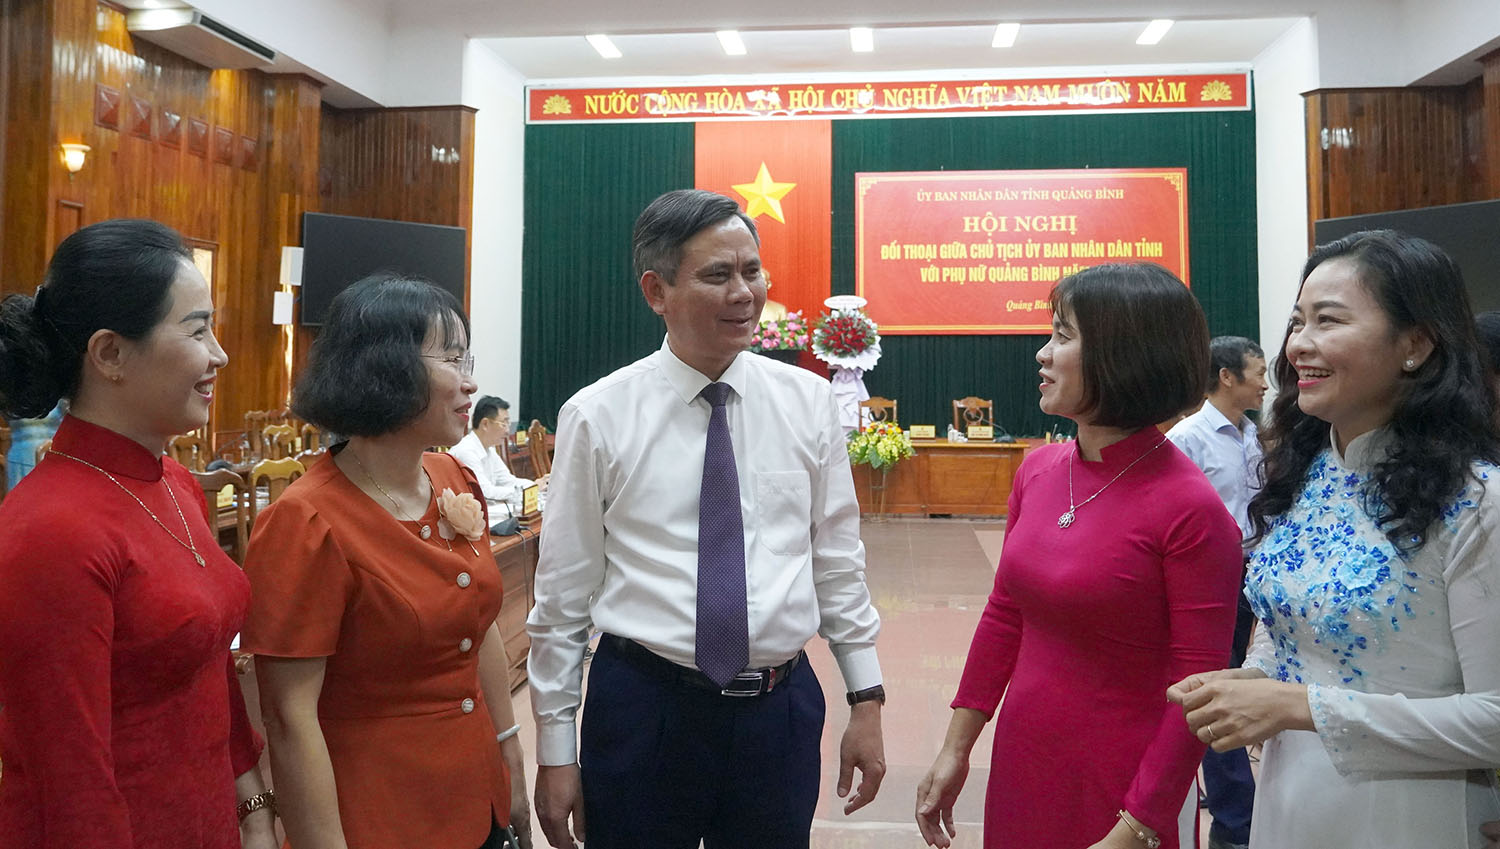 Đồng chí Chủ tịch UBND tỉnh Trần Thắng trao đổi với cán bộ, hội viên tại hội nghị